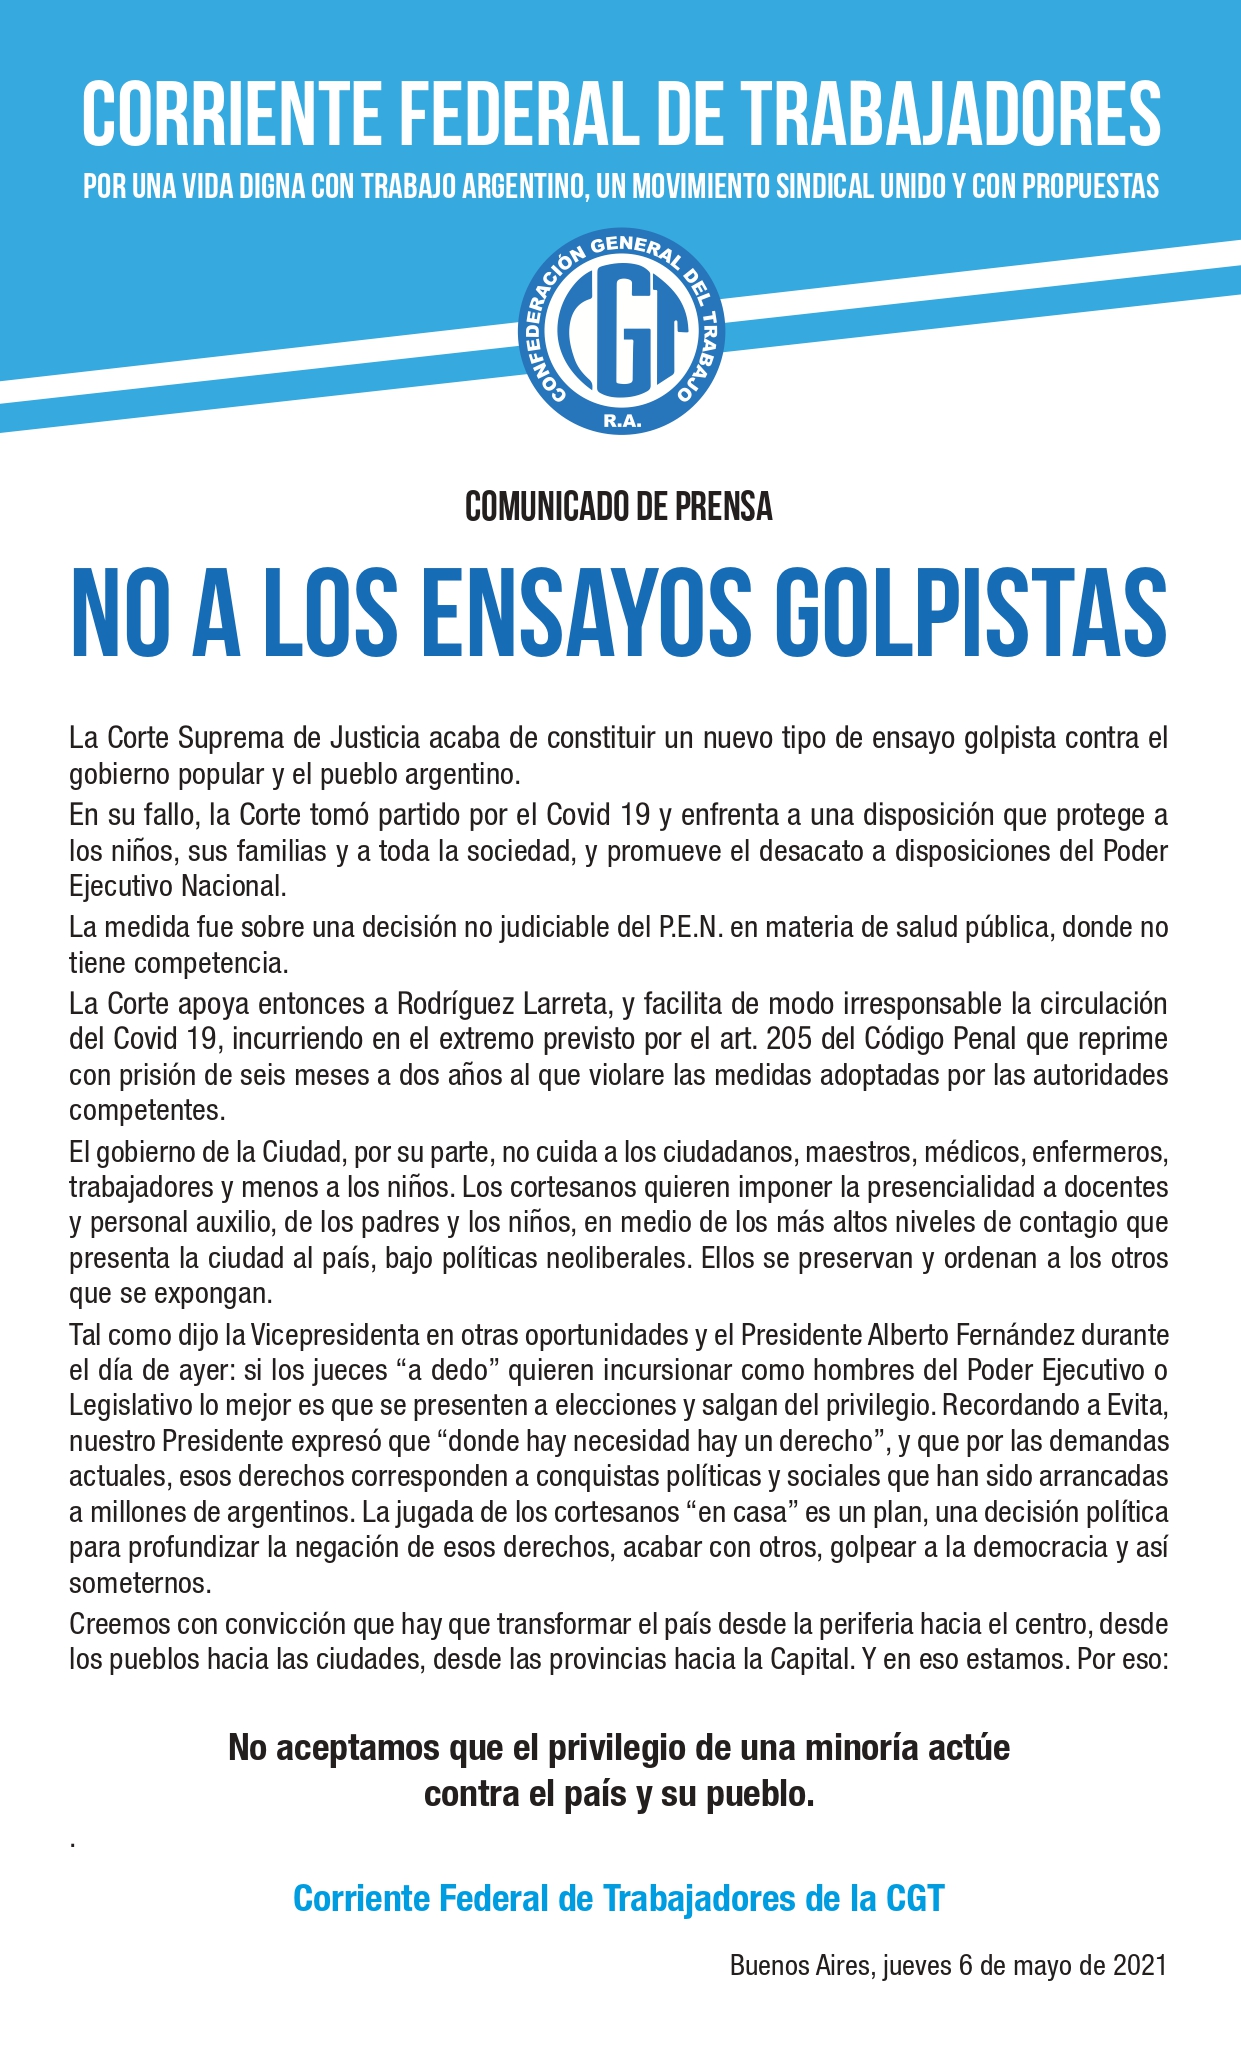 “NO A LOS ENSAYOS GOLPISTAS”, COMUNICADO DE LA CORRIENTE FEDERAL DE TRABAJADORES